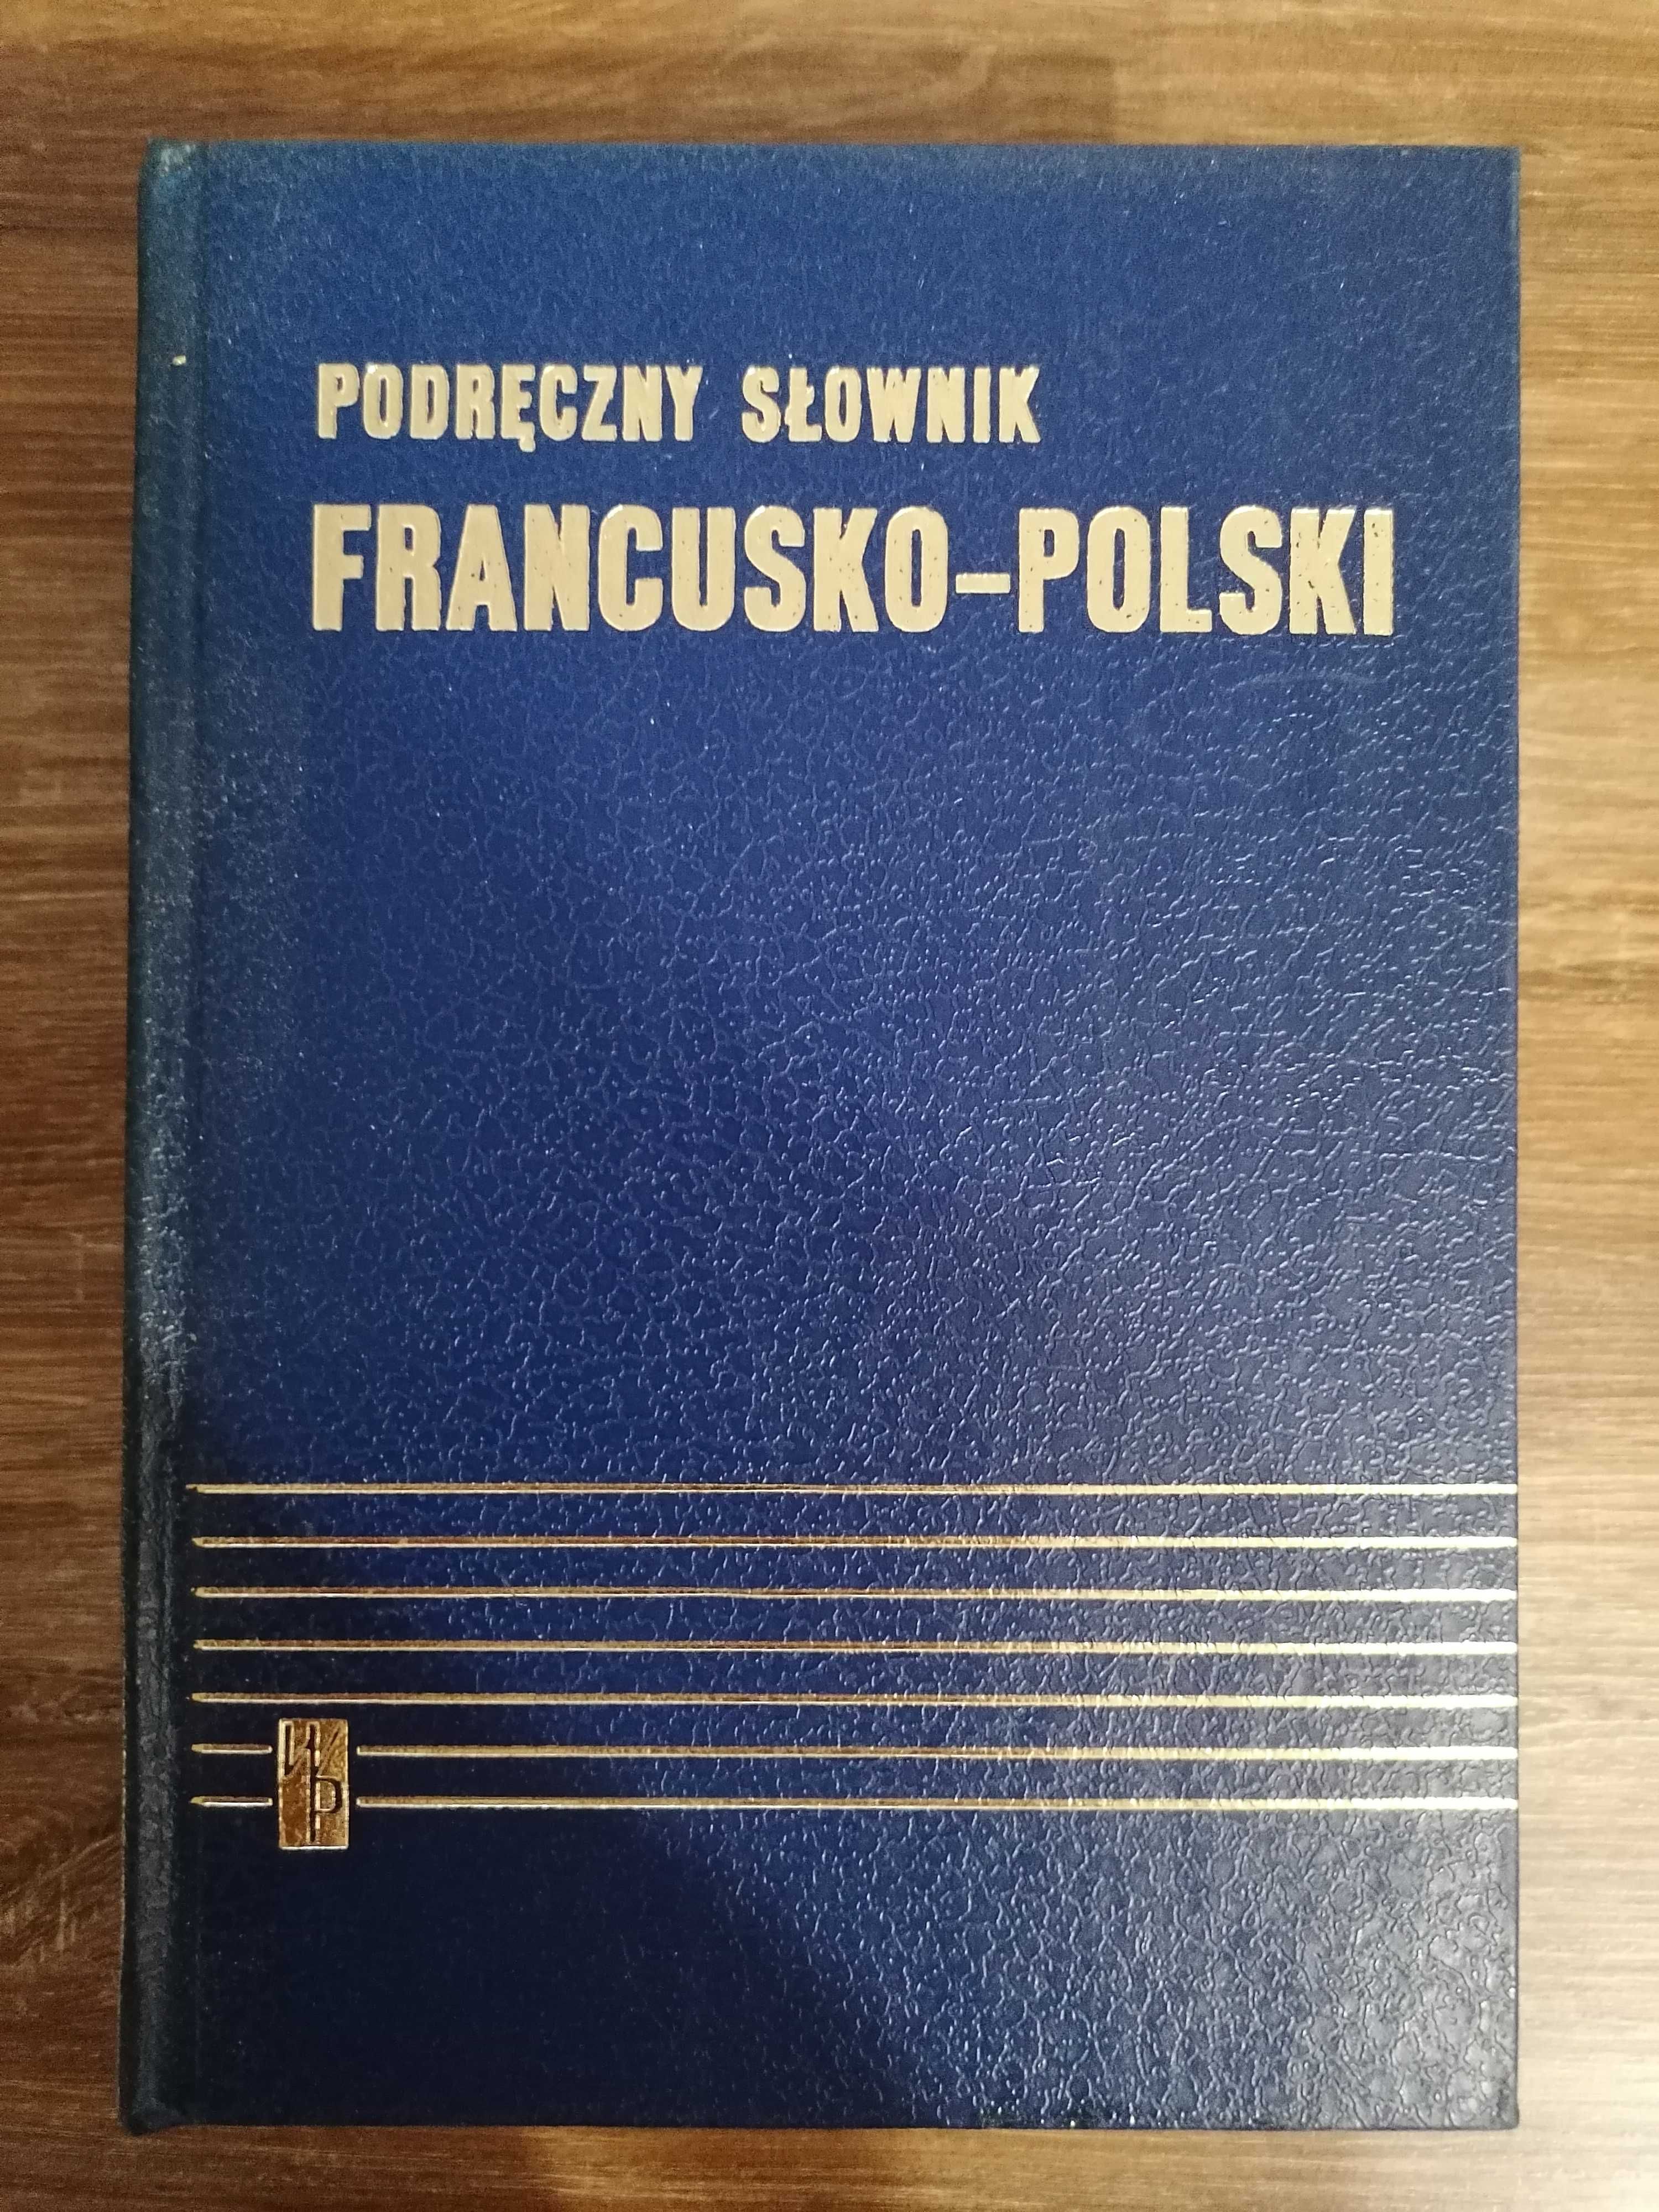 "Podręczny słownik francusko-polski"